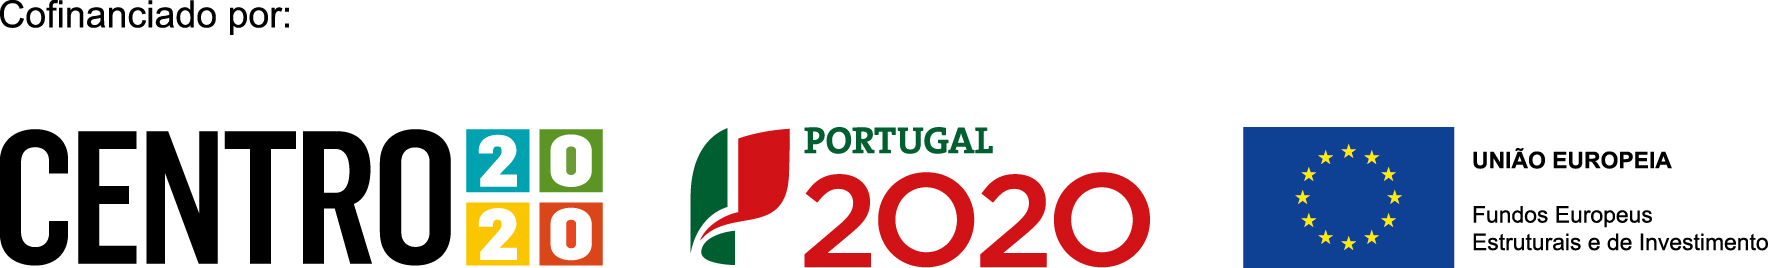 2020cabecalho